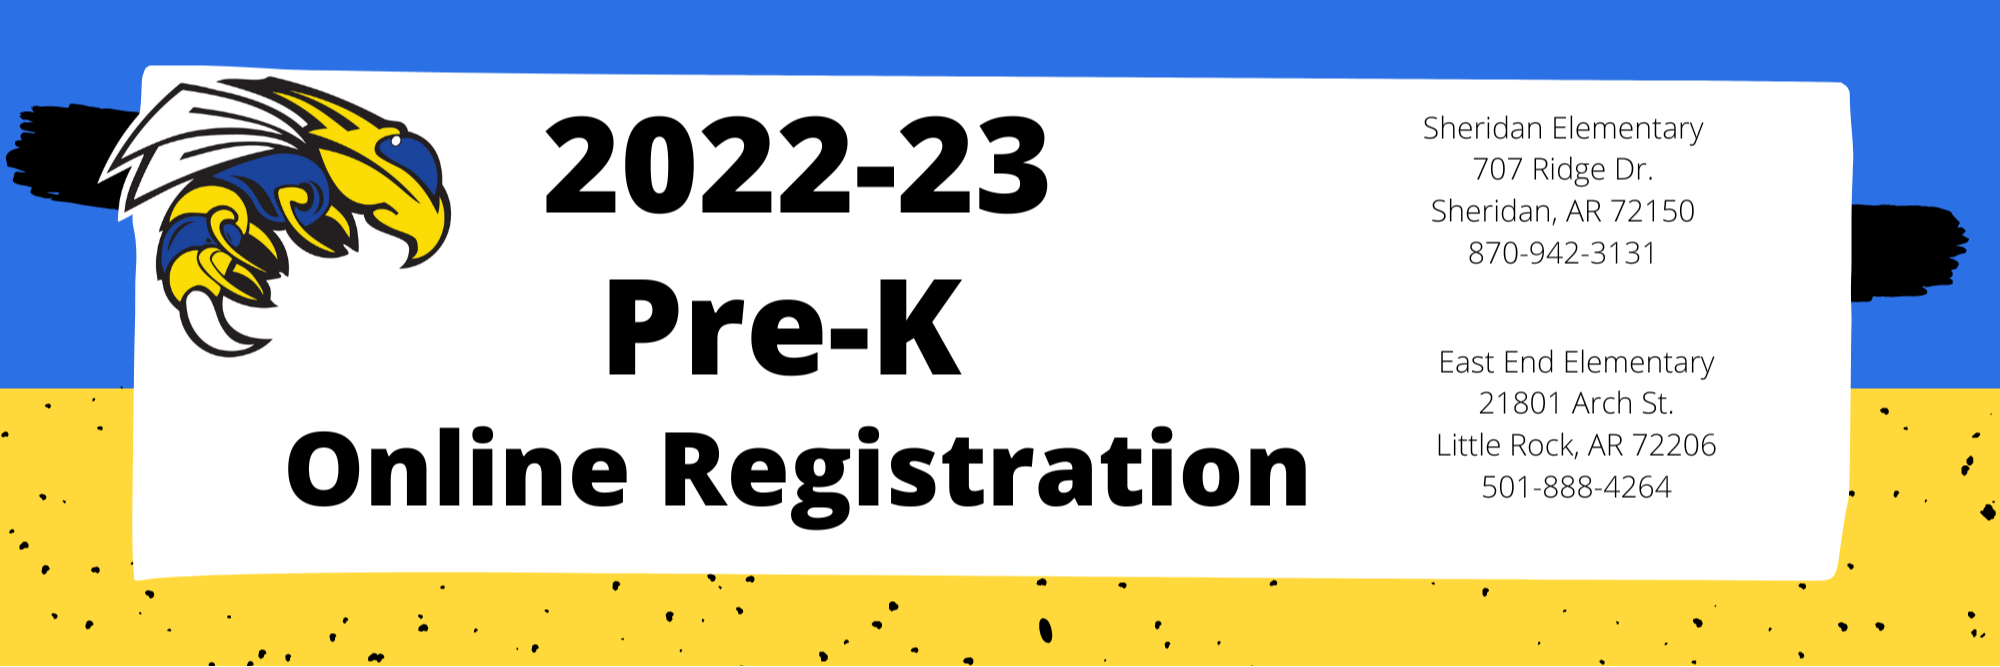 PRE-K REGISTRATION 